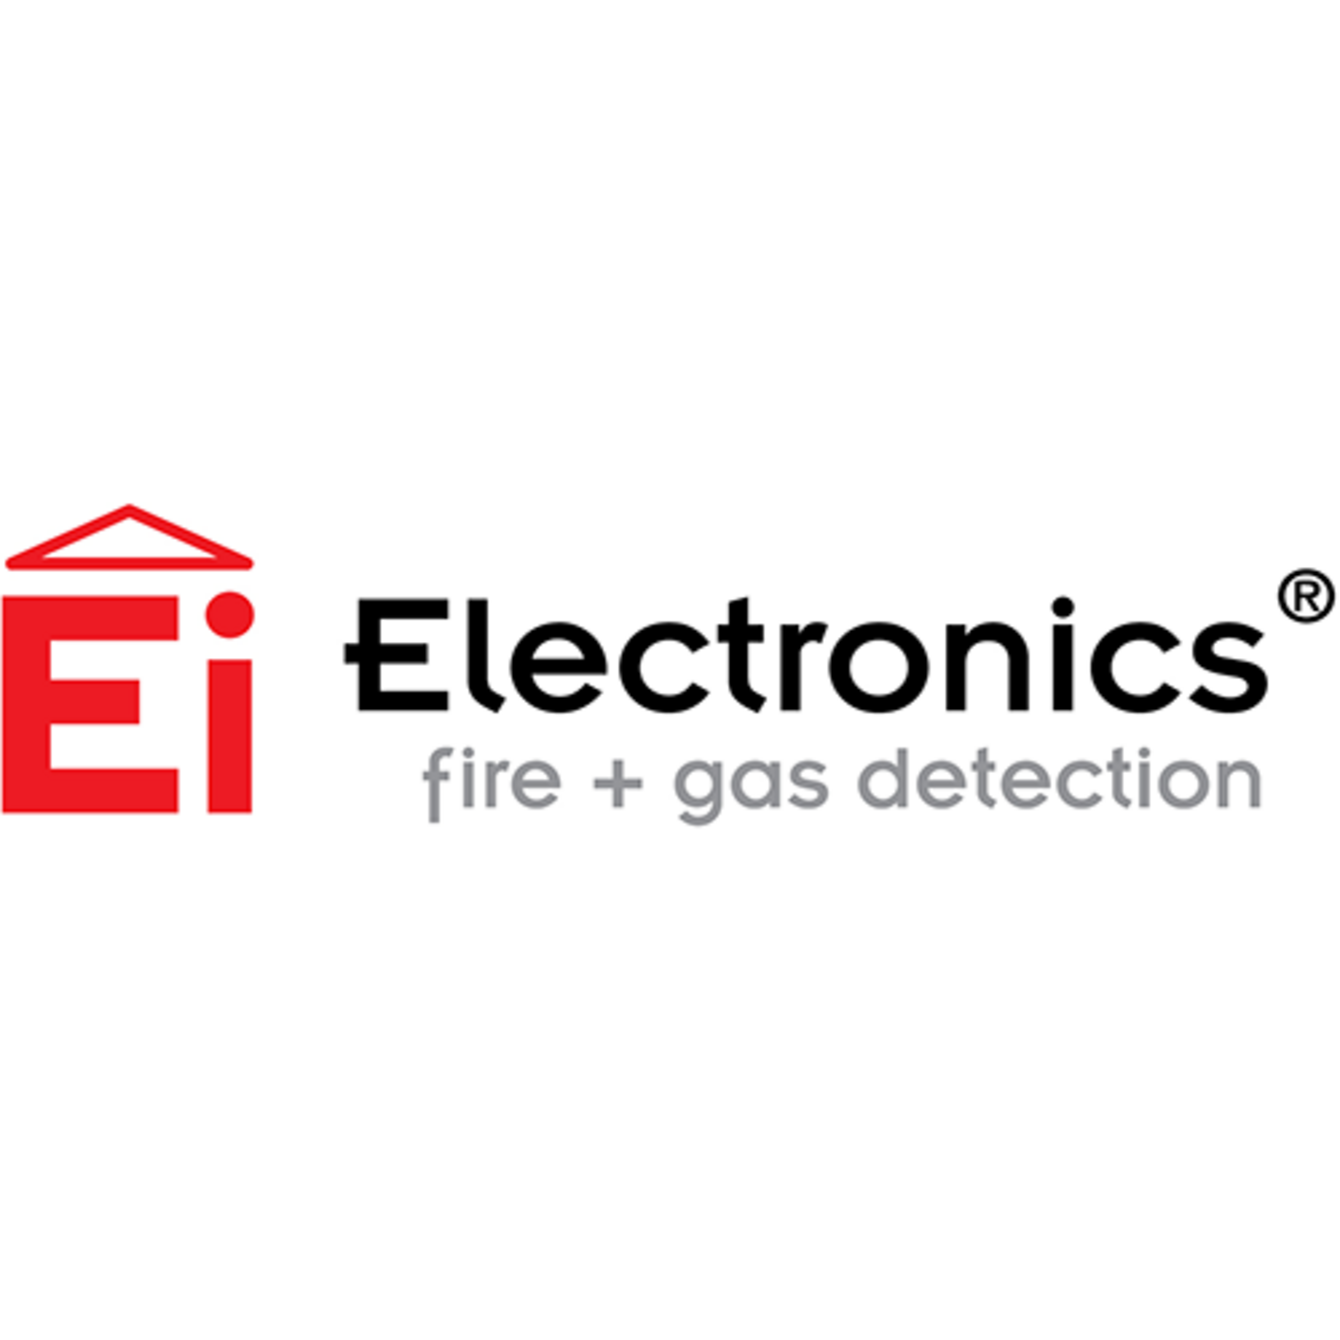 Ei Electronics bei Marco Neumann Elektrotechnik in Barsbüttel